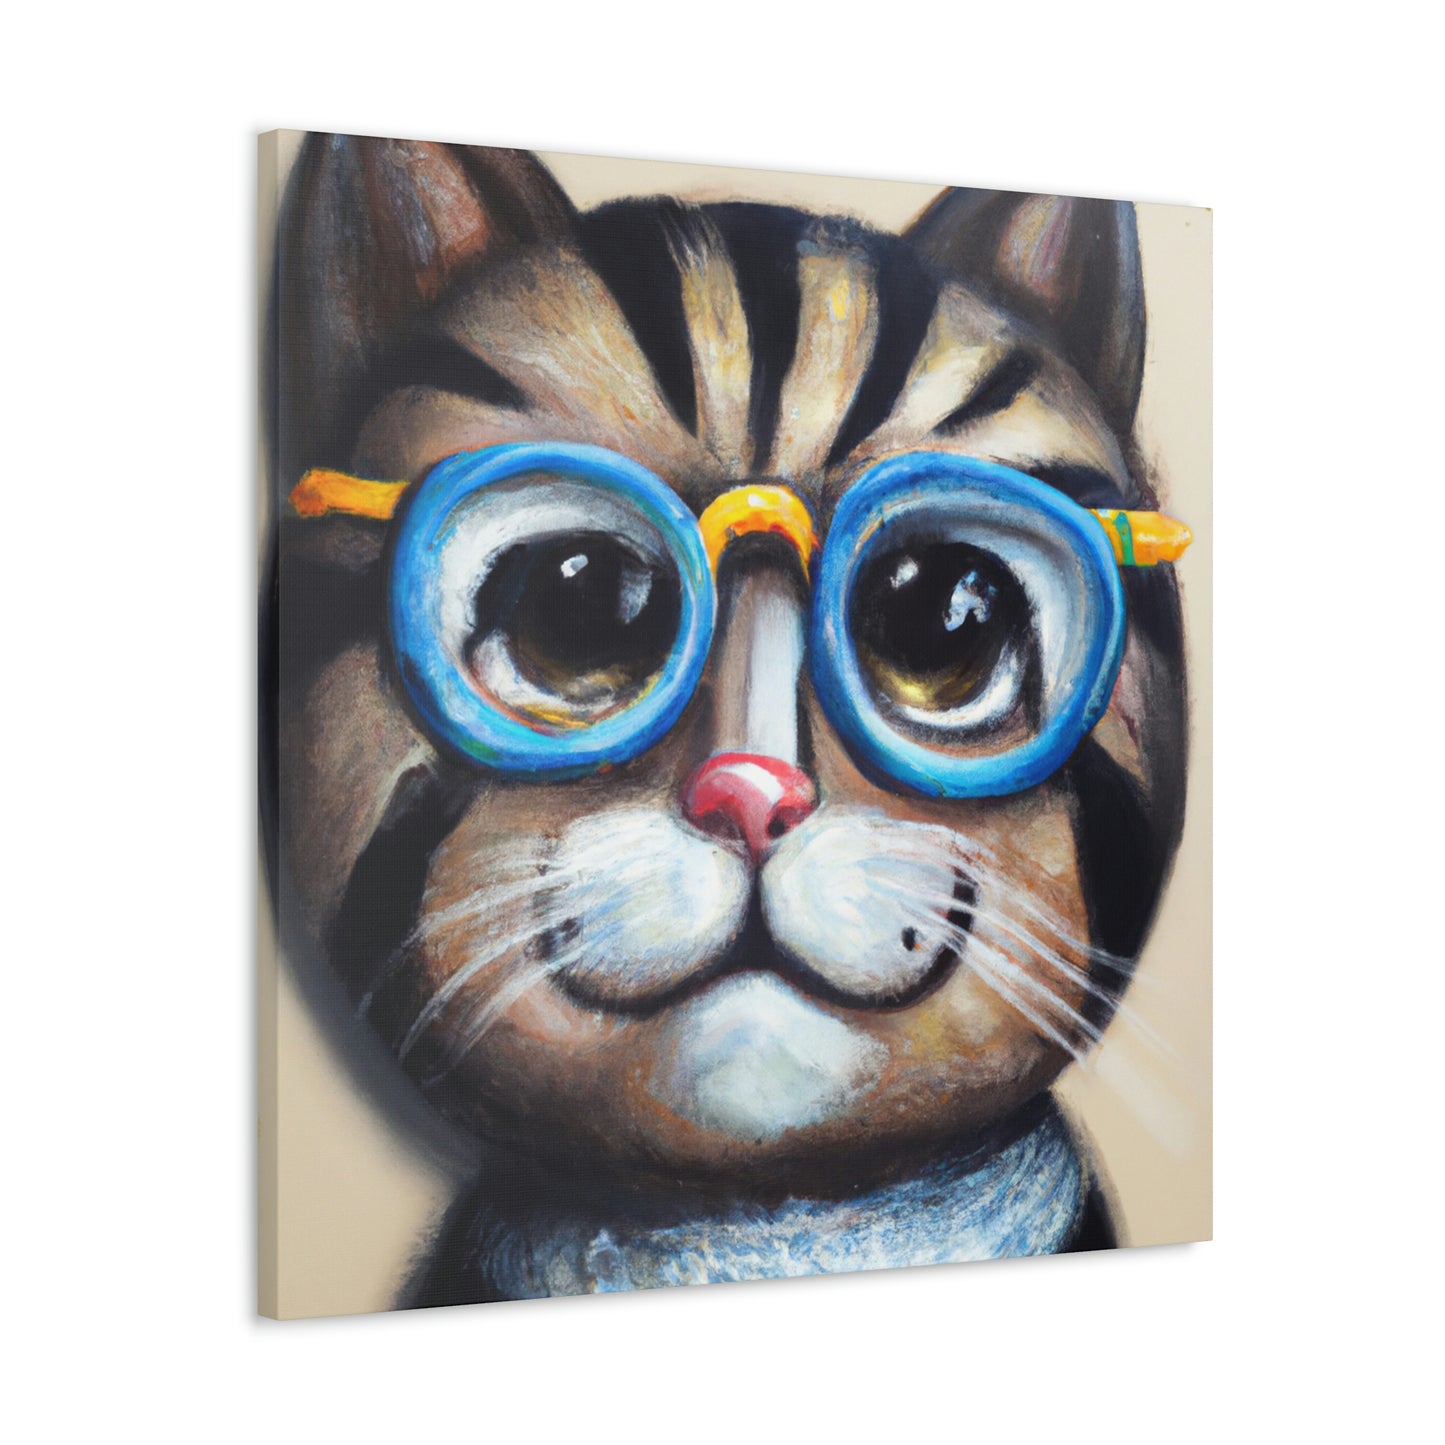 Hank the Huggable Cat - Cat Lovers Canvas Wall Art